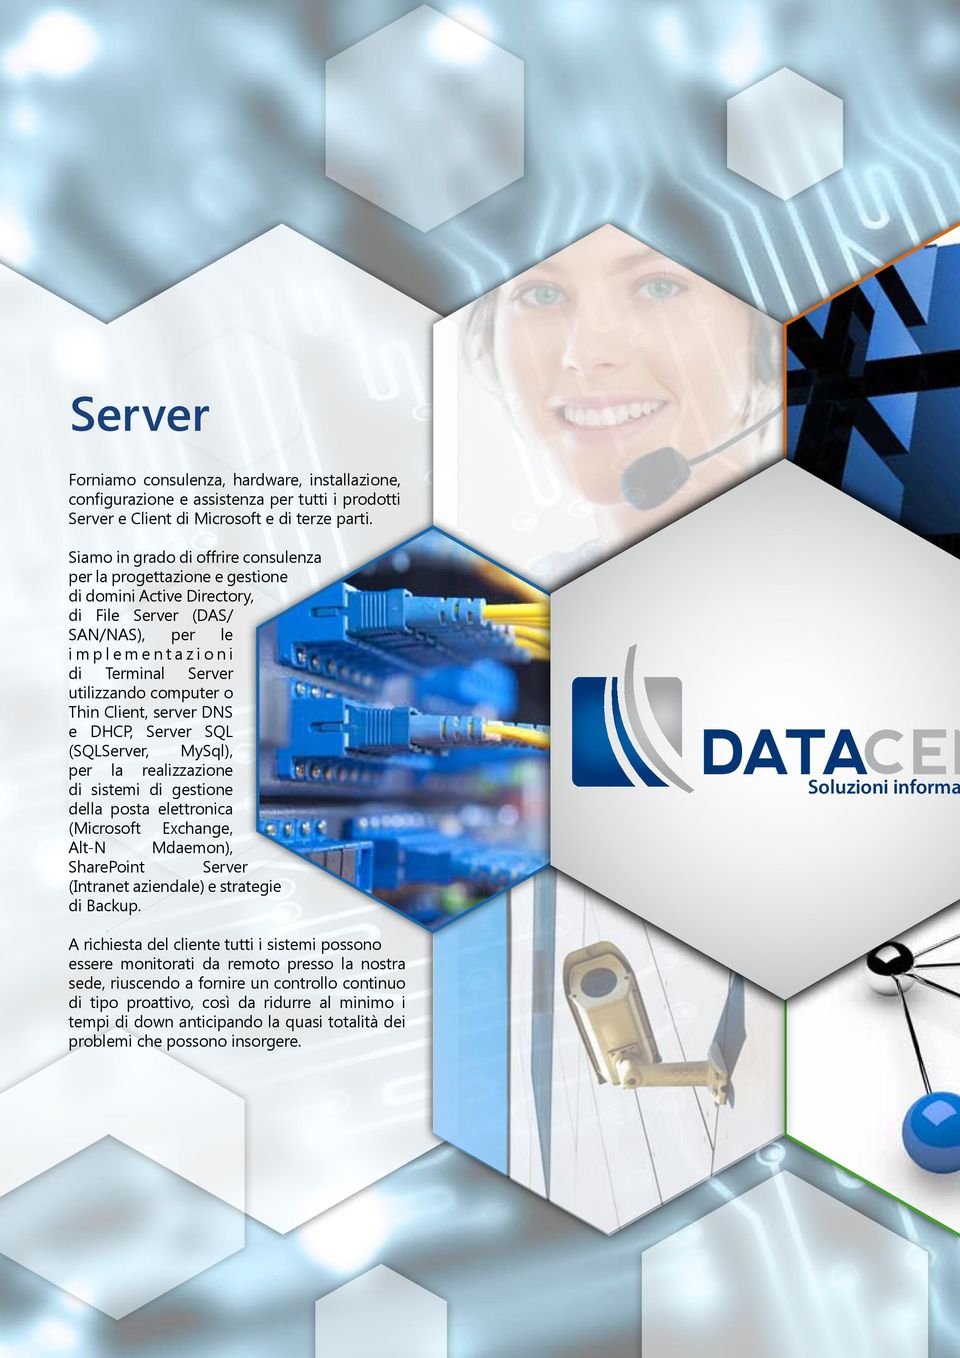 Client, server DNS e DHCP, Server SQL (SQLServer, MySql), per la realizzazione di sistemi di gestione della posta elettronica (Microsoft Exchange, Alt-N Mdaemon), SharePoint Server (Intranet